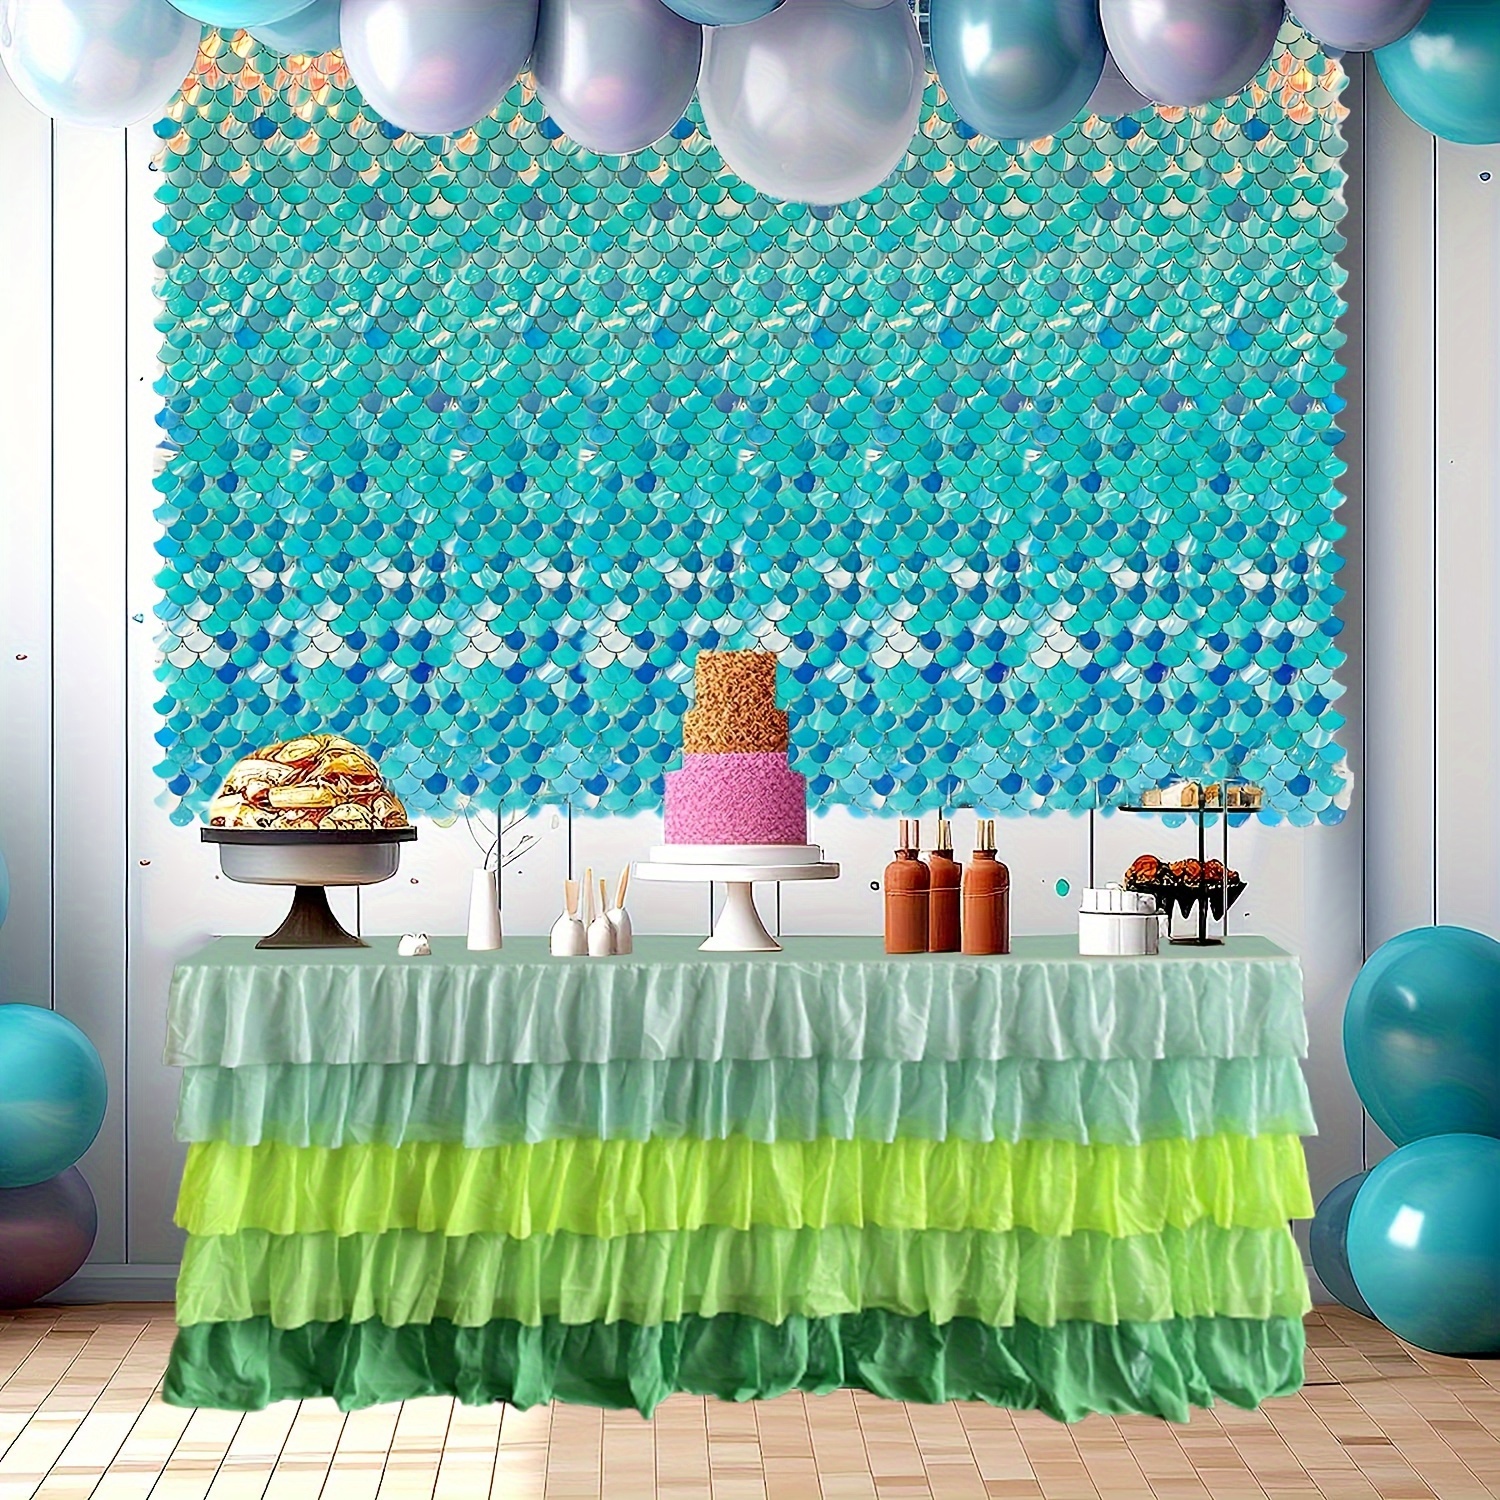 虹色の背景幕 スカラップスパンコールパネル きらめく壁背景幕 スイートドアパーティー用品、誕生日、記念日、結婚式、卒業式、独身パーティーの装飾用 -  いいえ! きらめき壁背景幕のみ